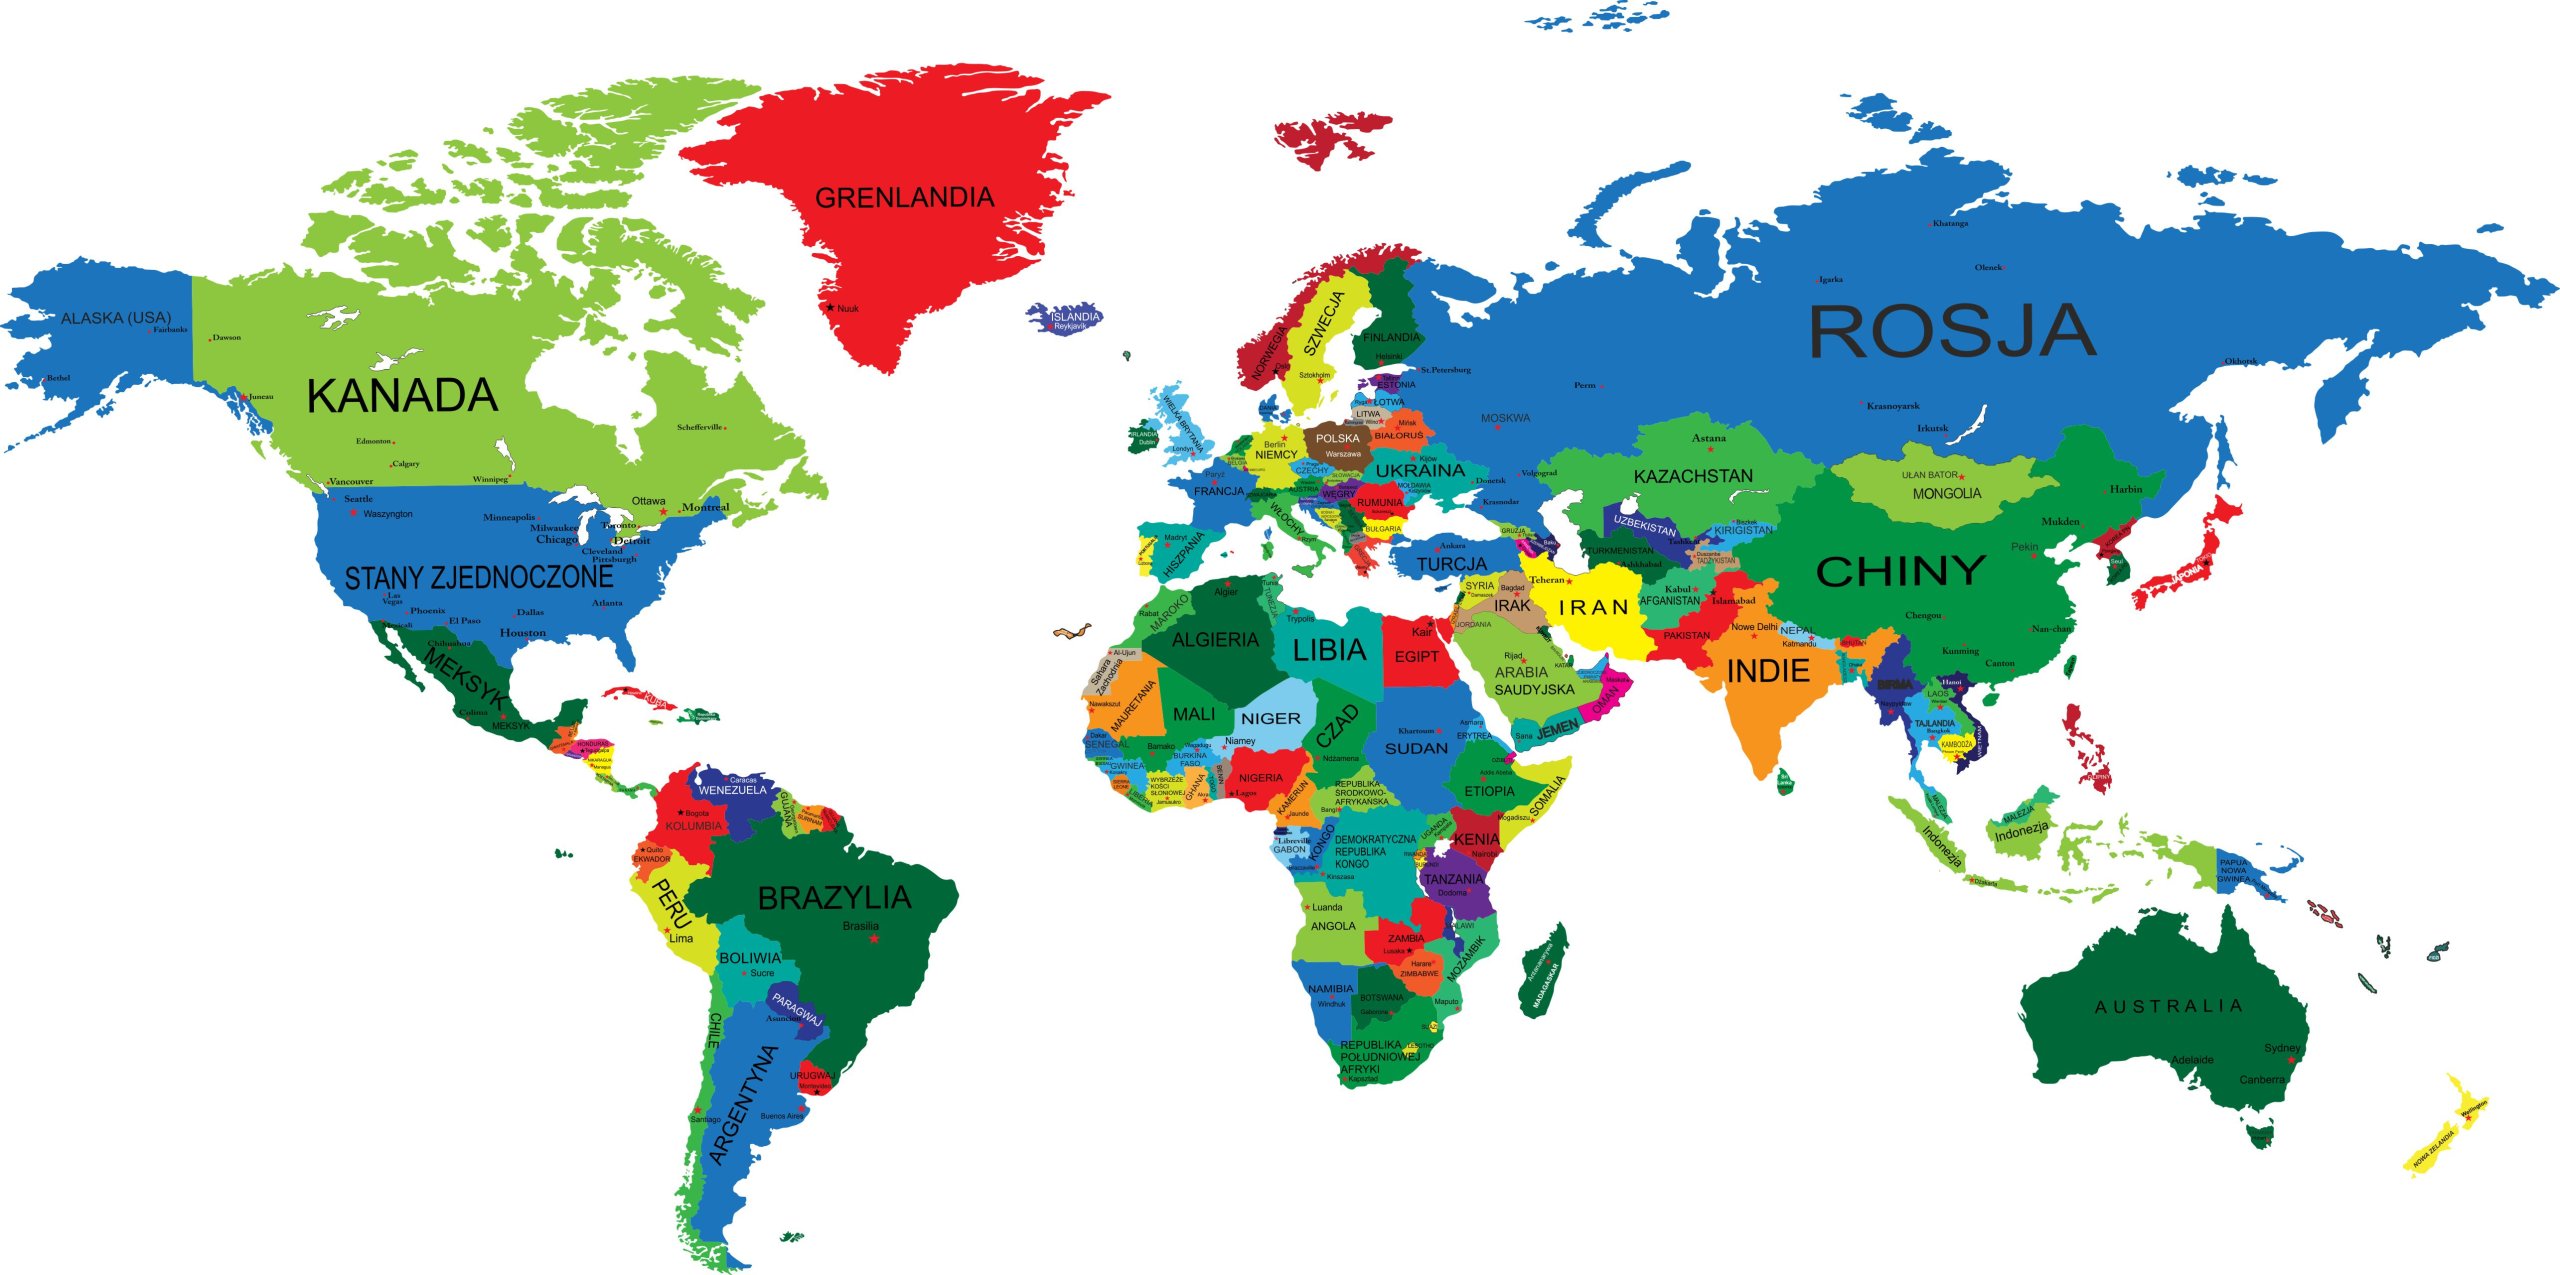 Naklejki na ścianę mapa świata kolorowa 120x240cm 7207546929 ...